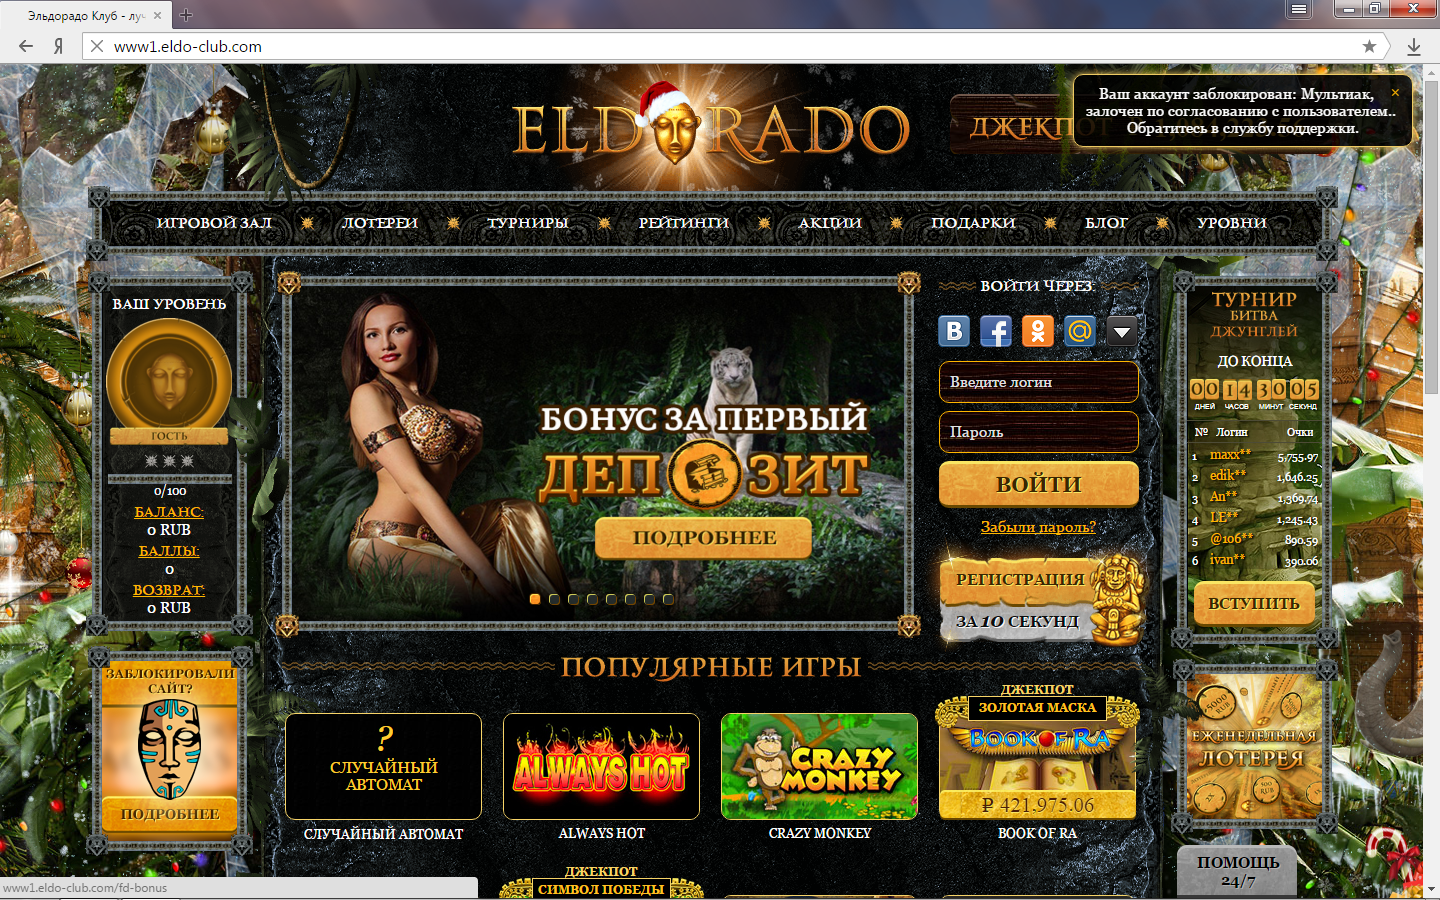 Казино эльдорадо мобильной версии сайта казино игровые автоматы бесплатно и без регистрации